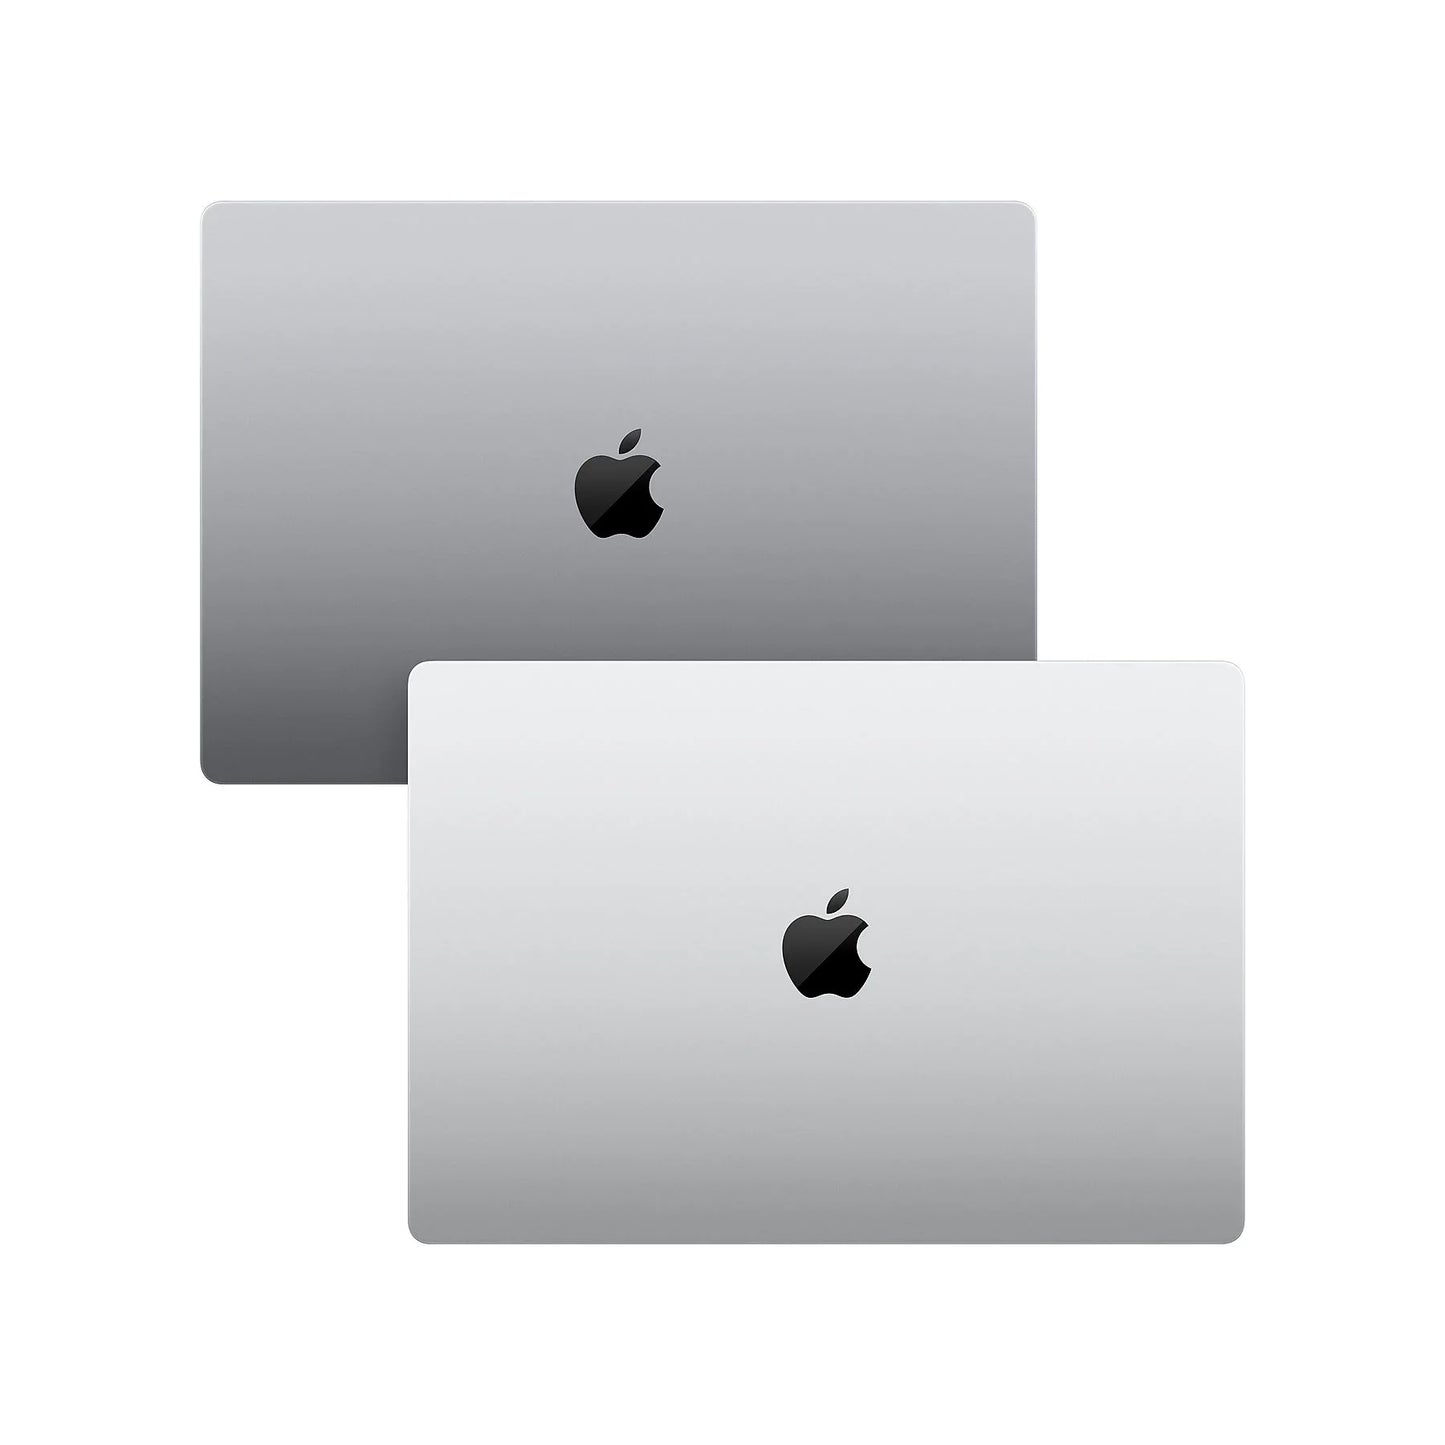 MacBook Pro 16-inch M1 Pro 10-core CPU & 16-core GPU 16GB 512GB